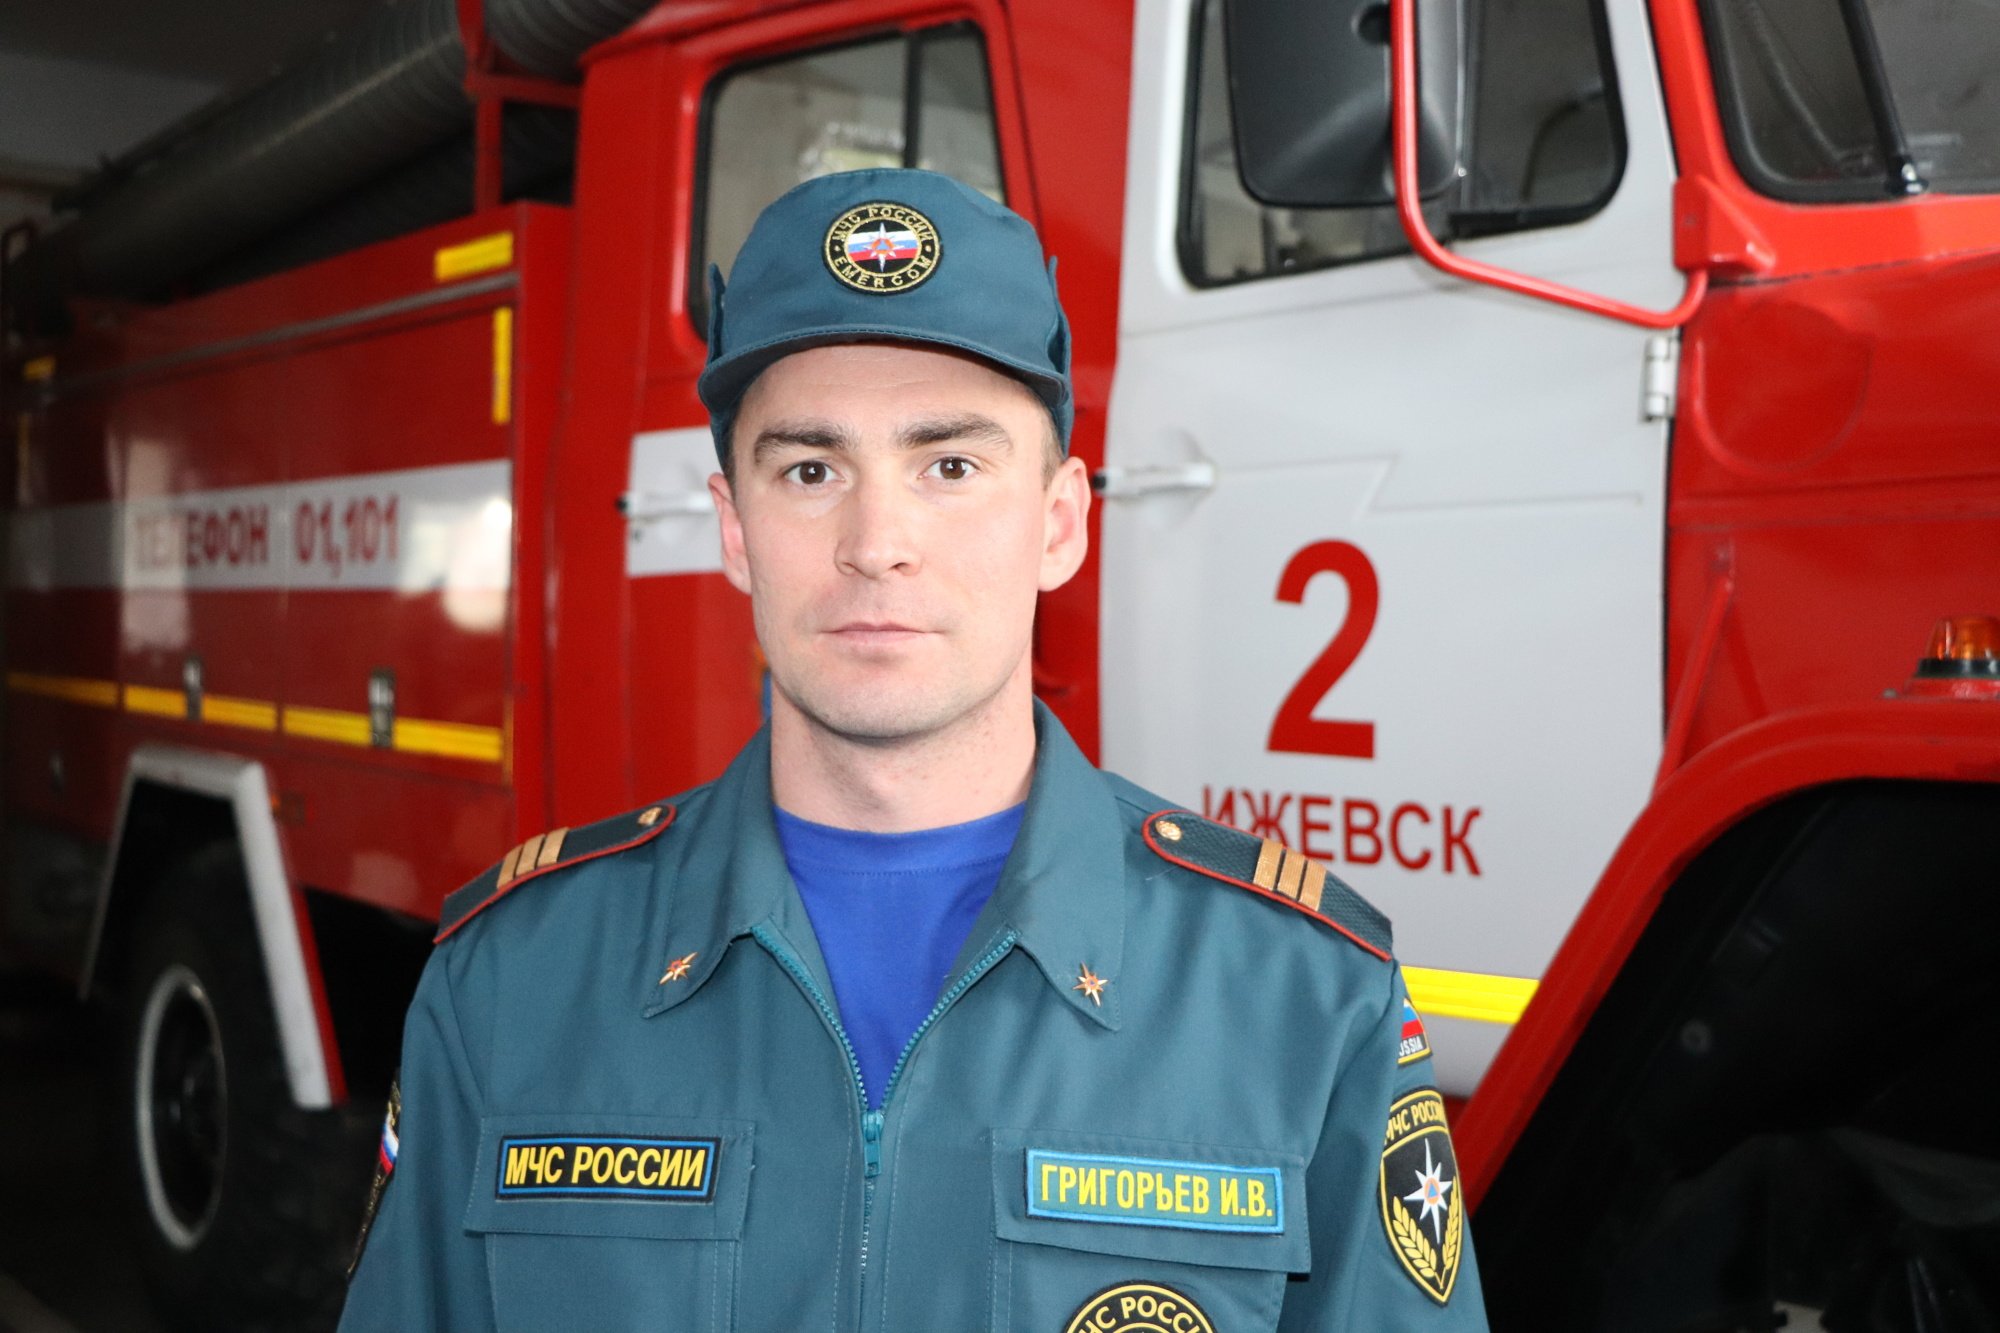 

Пожарный из Удмуртии стал «Лучшим по профессии» в Поволжье

